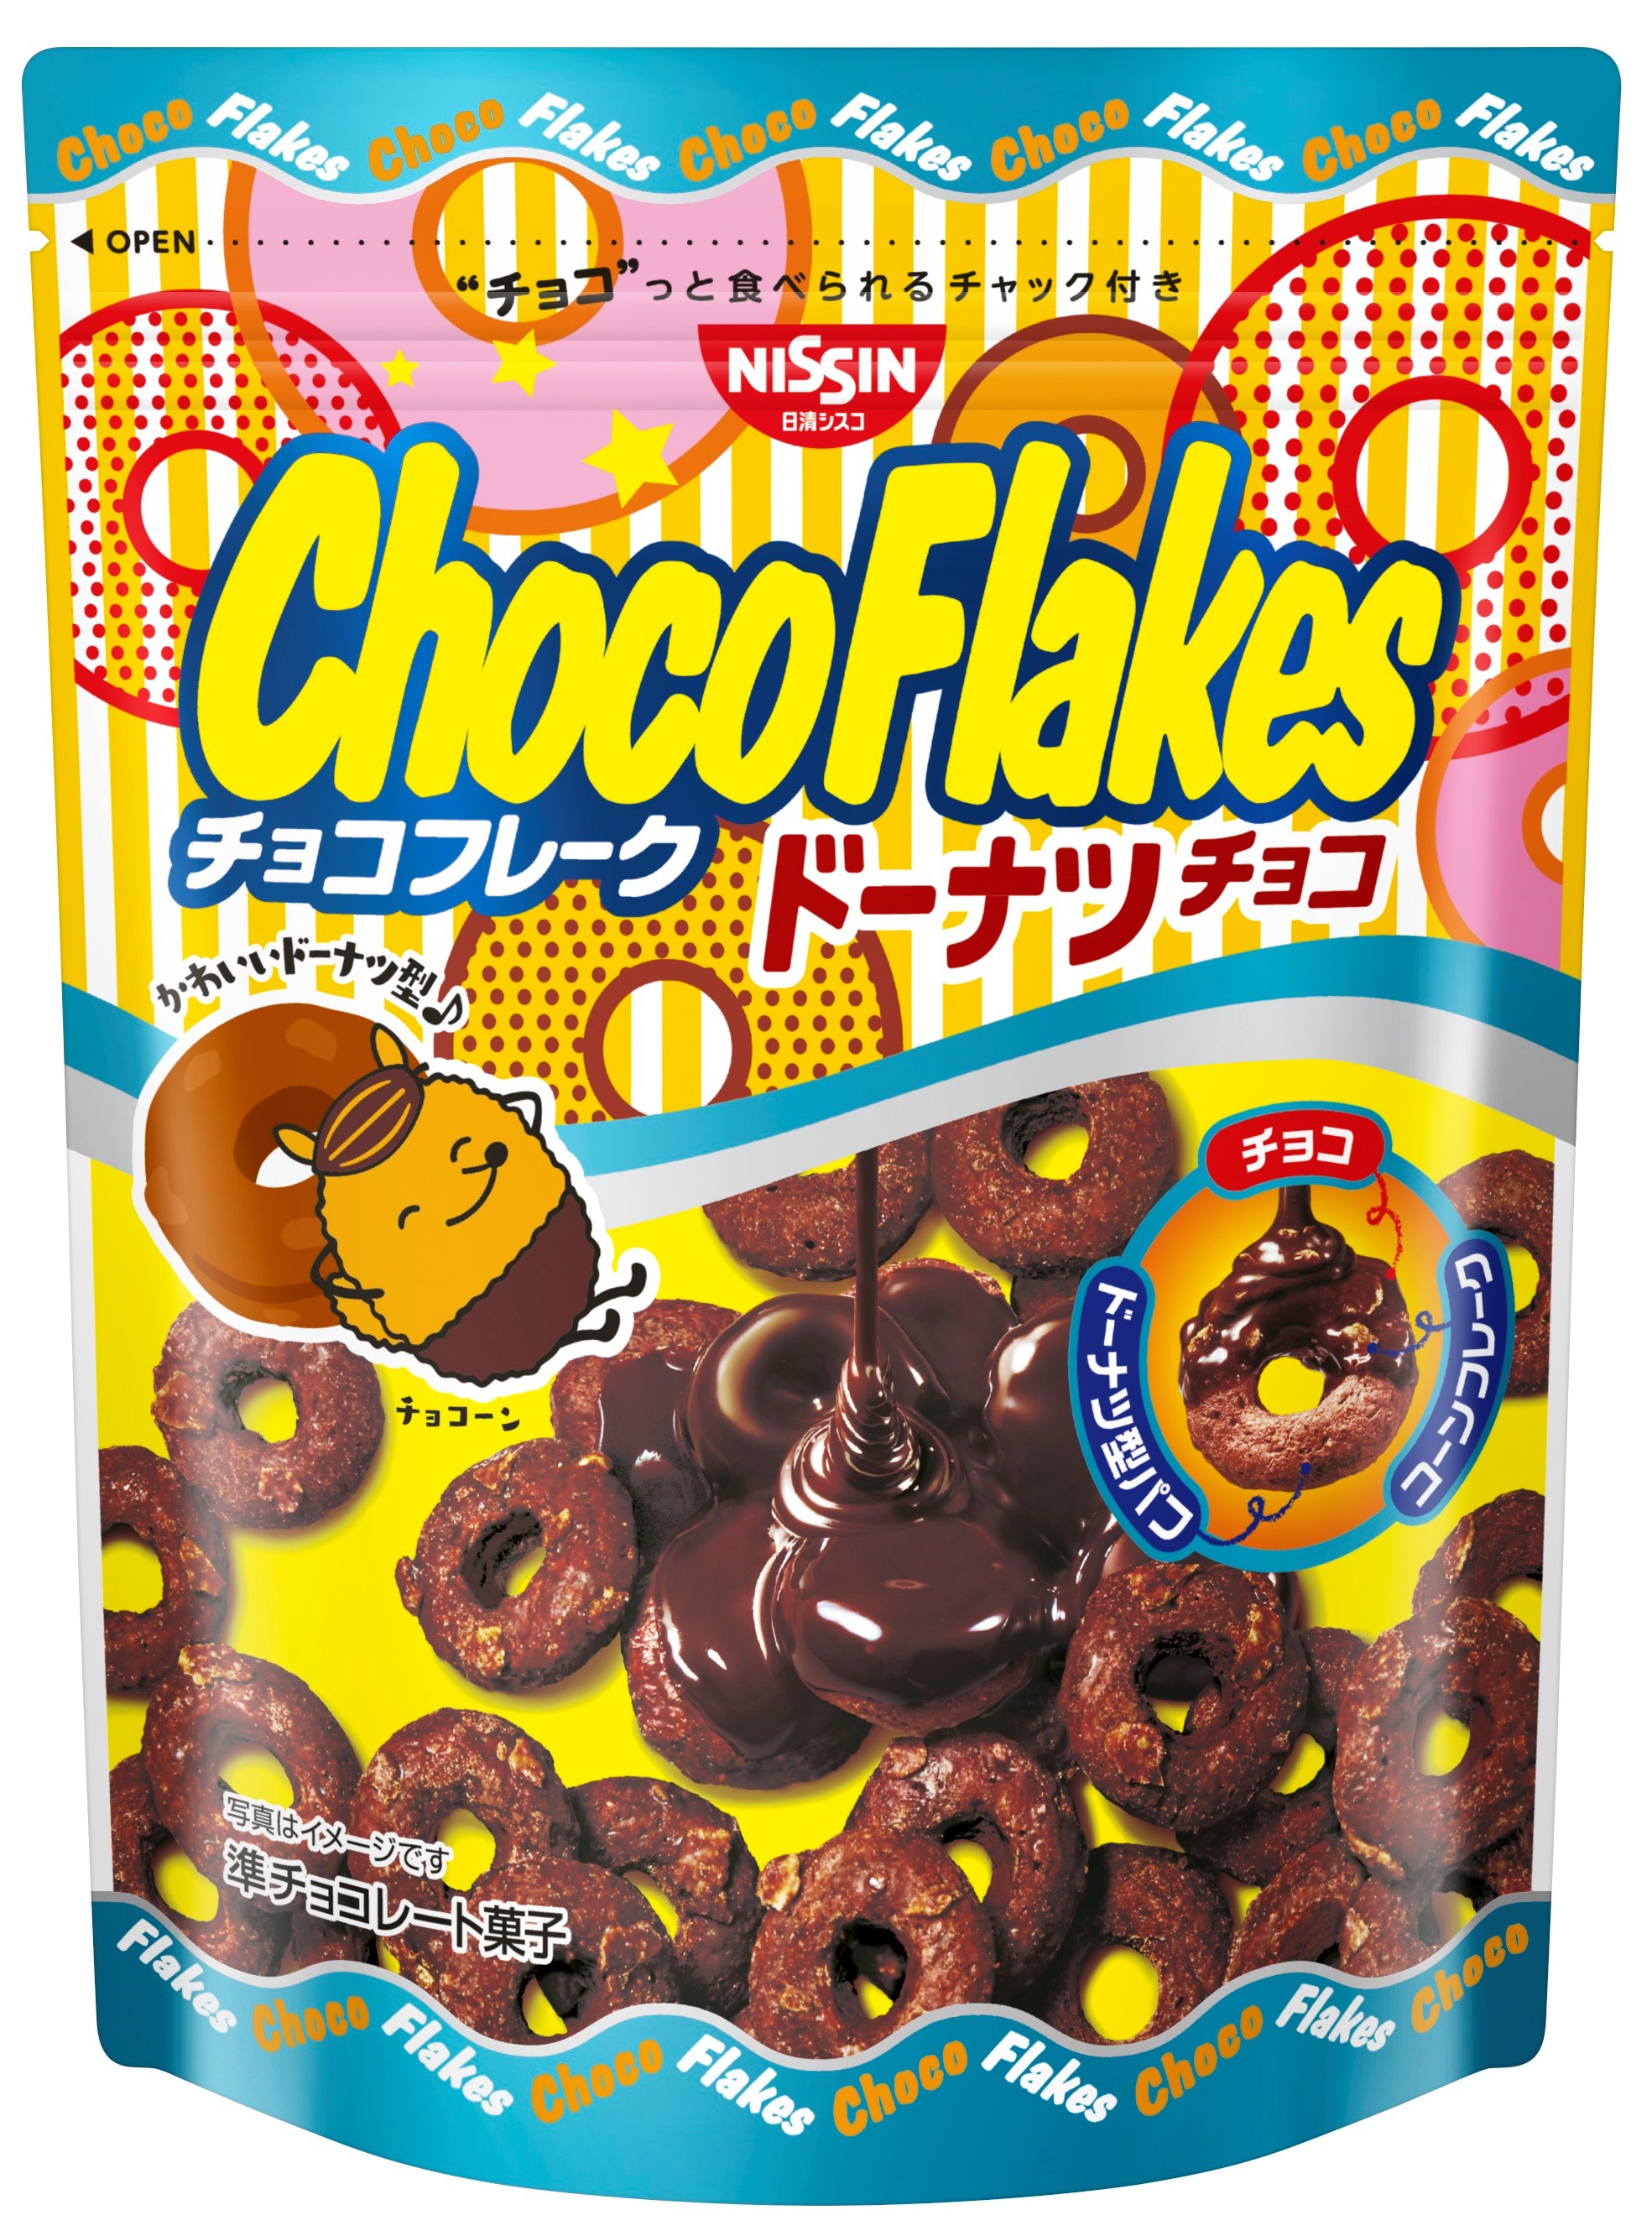 チョコフレークが ドーナツになった チョコフレーク ドーナツチョコ を21年3月1日 月 に新発売 日清シスコ株式会社のプレスリリース